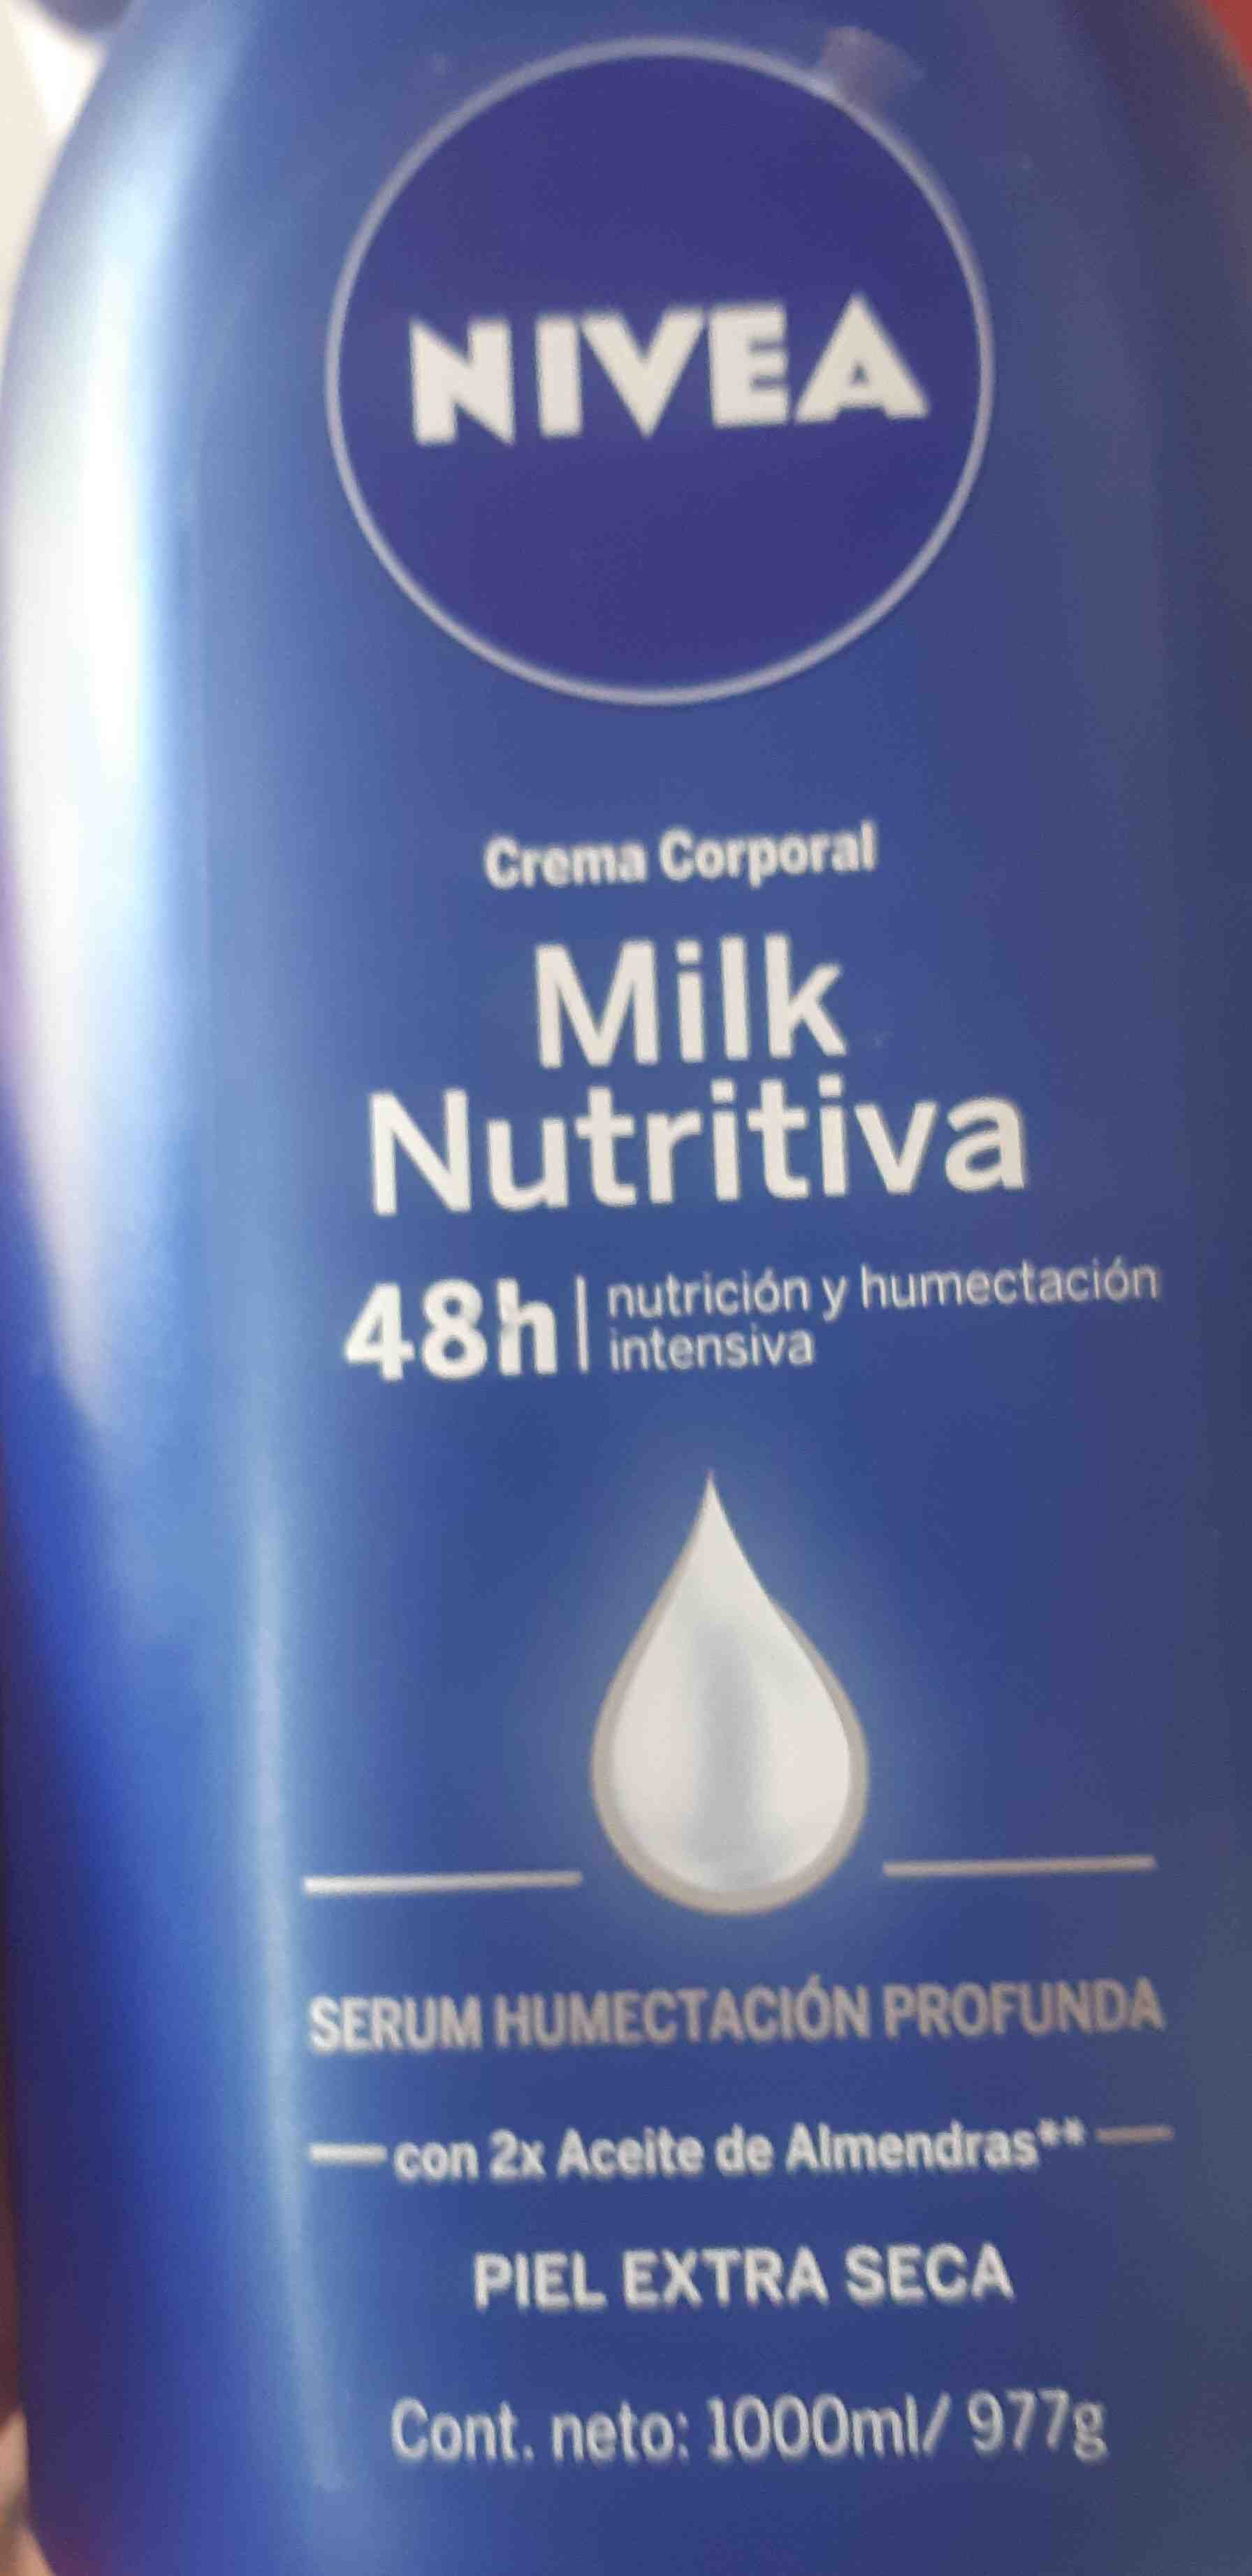 Milk nutritiva - Tuote - en